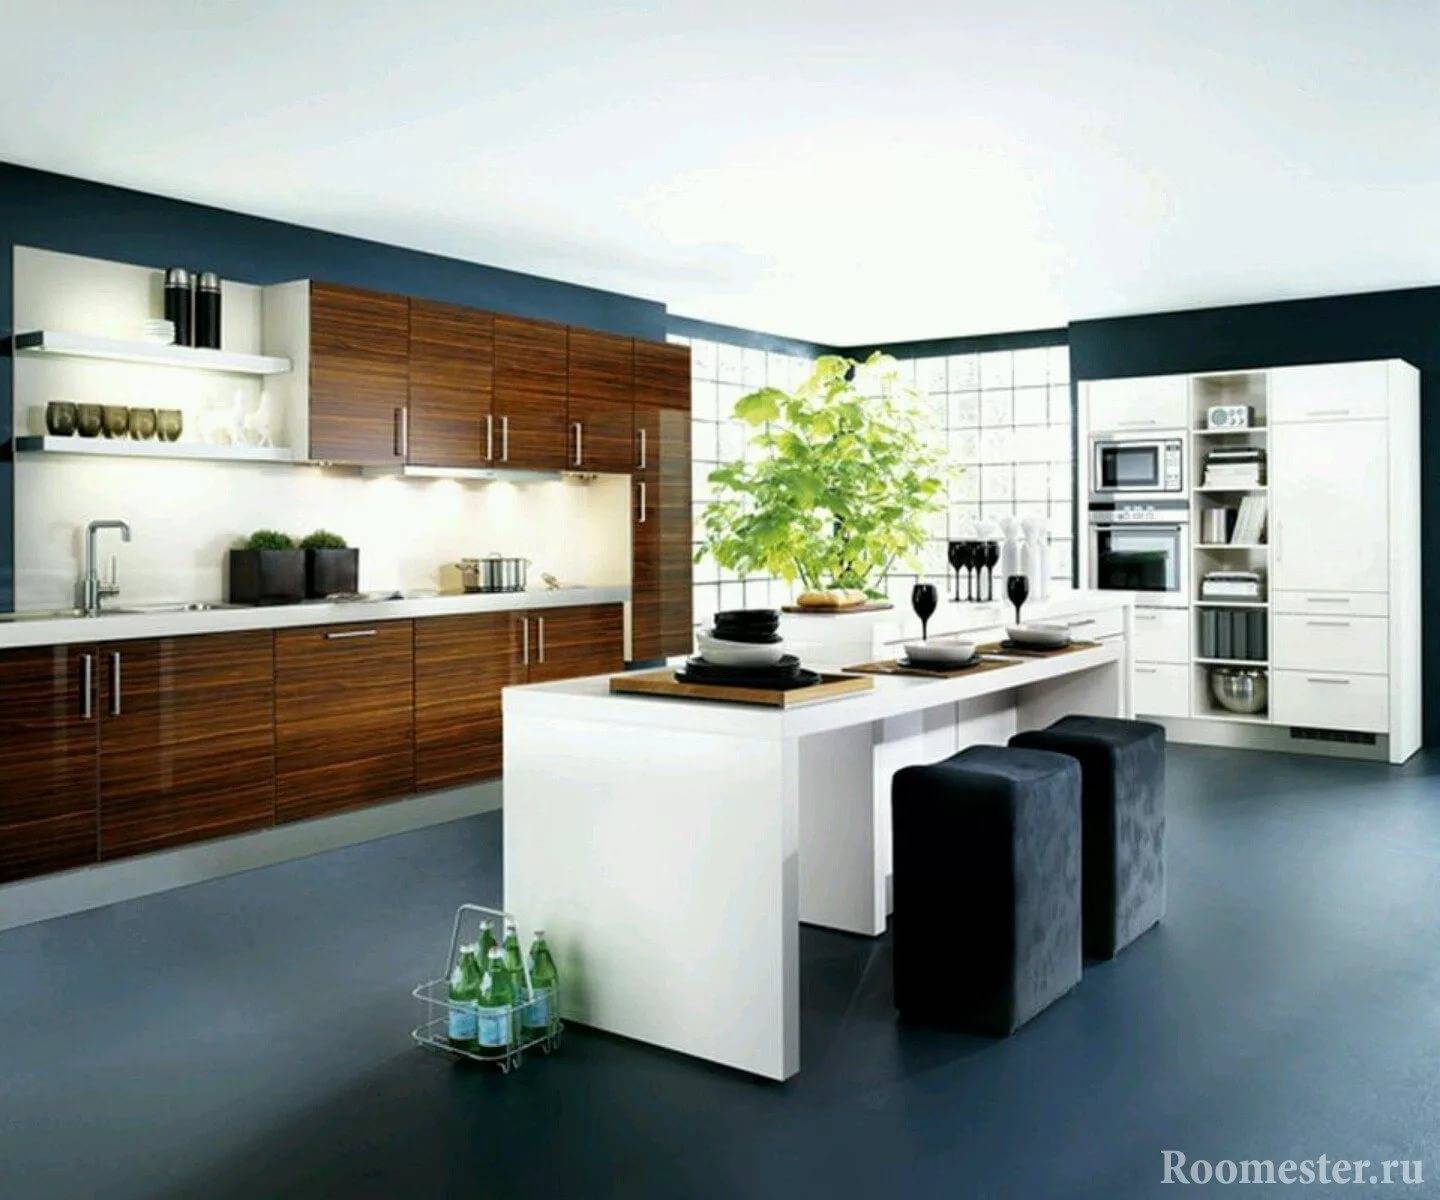 Кухня в стиле модерн: 150 фото идей оформления кухни, правила дизайна в стиле модерн с обзорами интерьеров